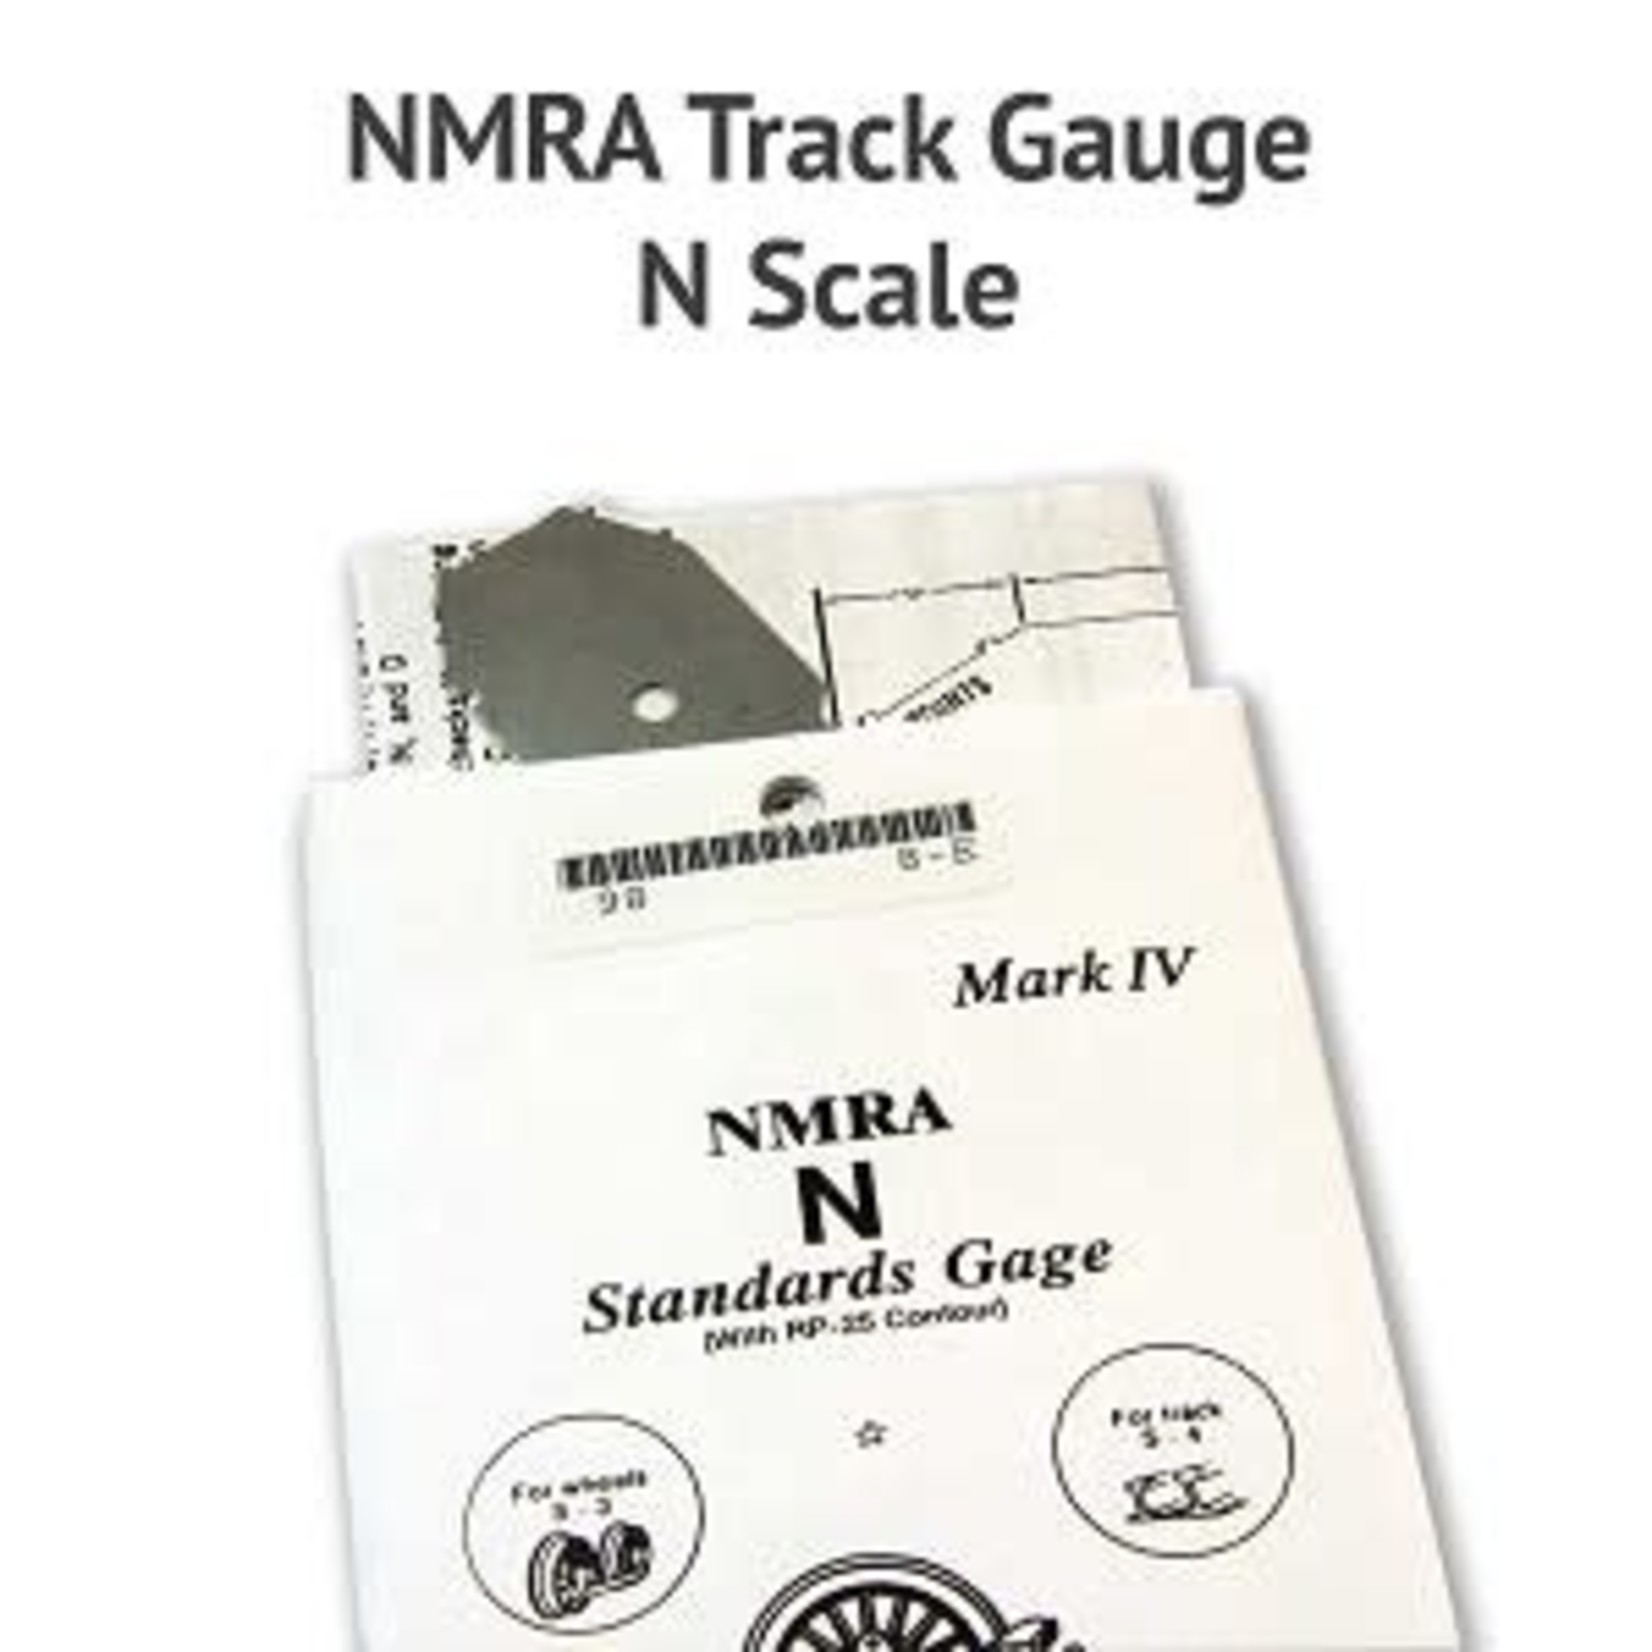 N NMRA Track Gauge